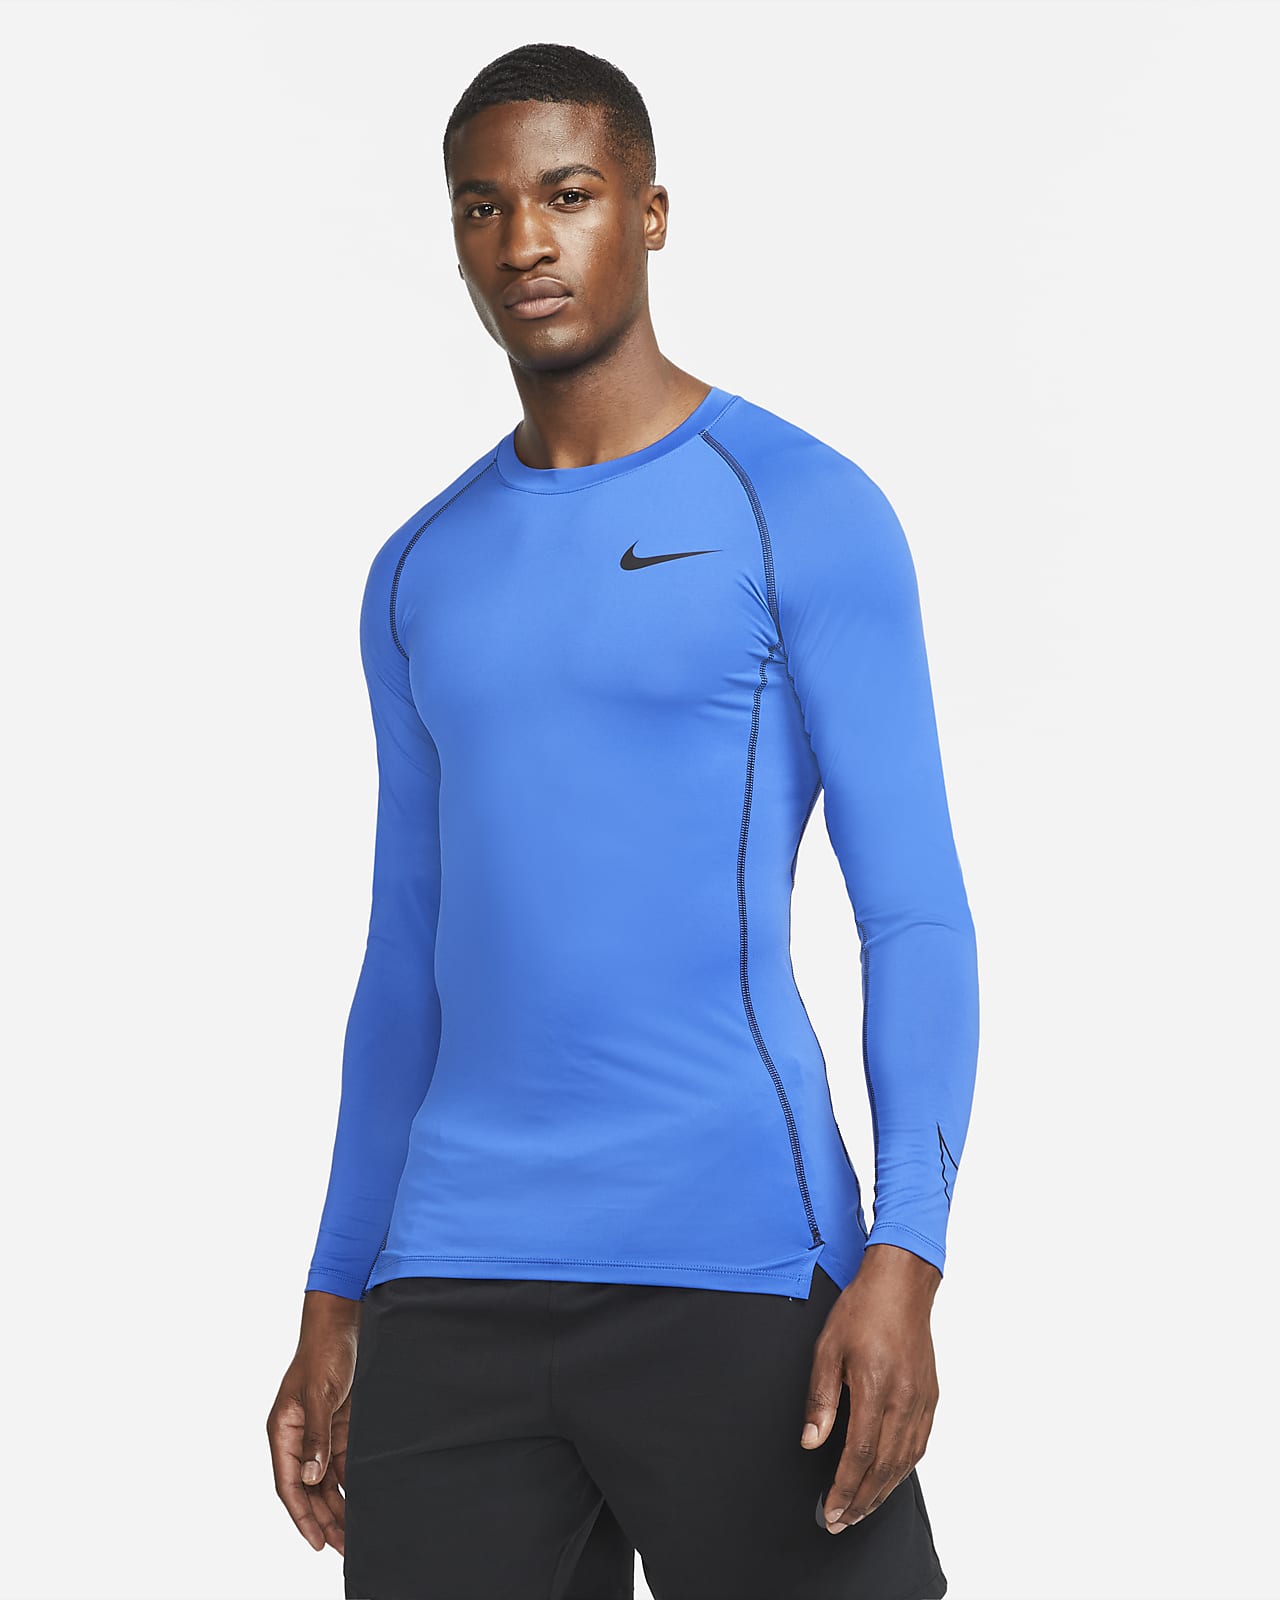 Survetement Homme Nike Dri-Fit Noir et Bleu - Football - Manches longues -  Respirant